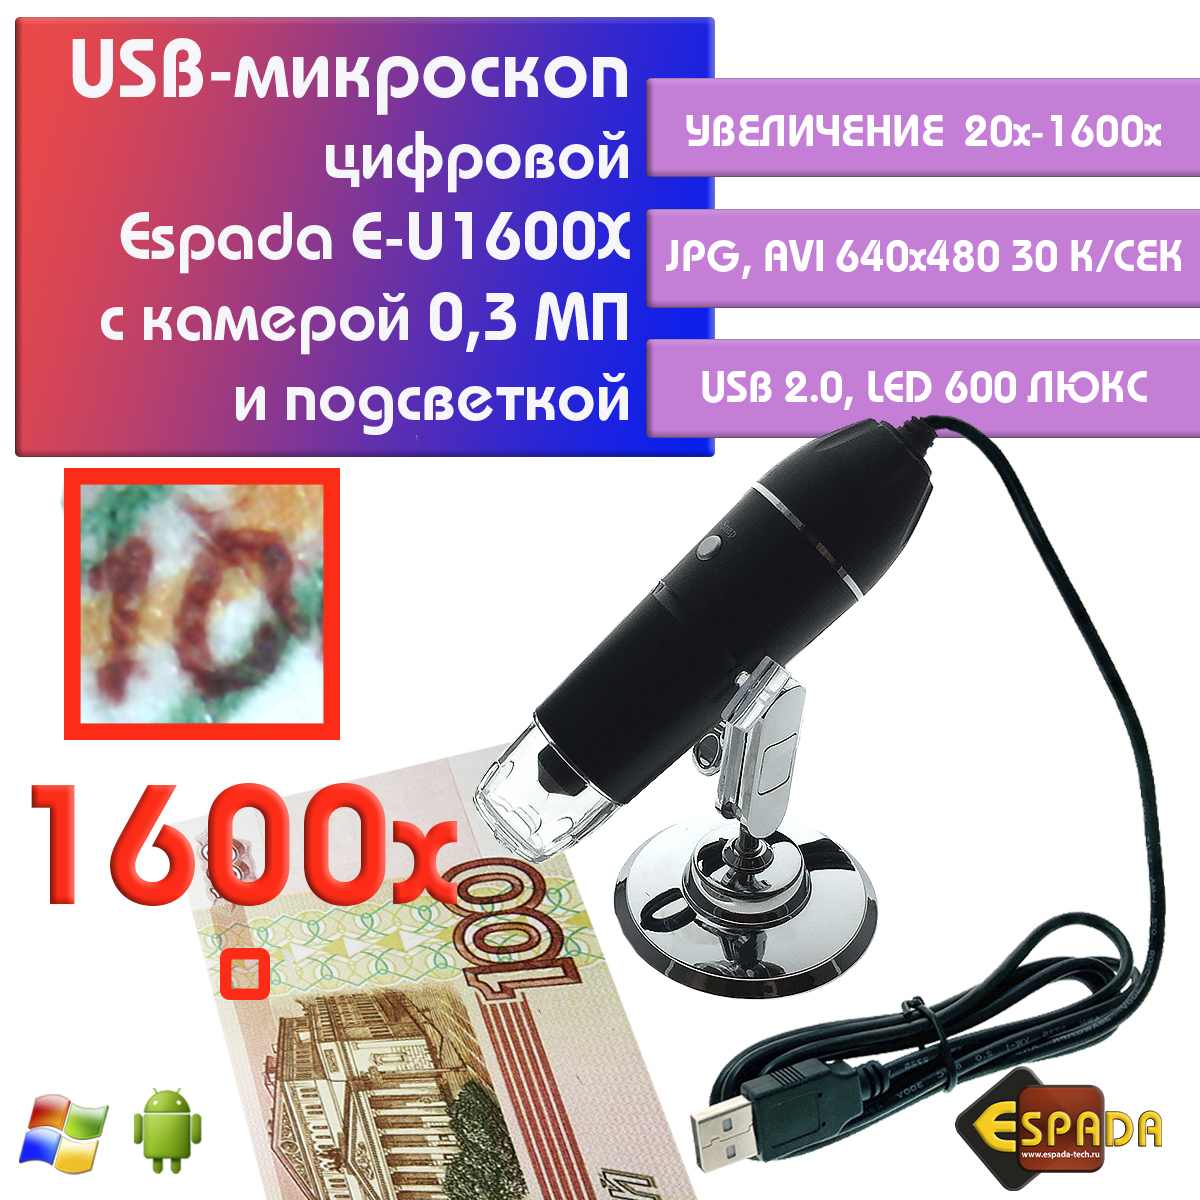 Портативный цифровой USB-микроскоп Espada E-U1600X c камерой 0,3 МП и увеличением 1600x видеокарта gigabyte gt 1030 2gb gv n1030d4 2gl